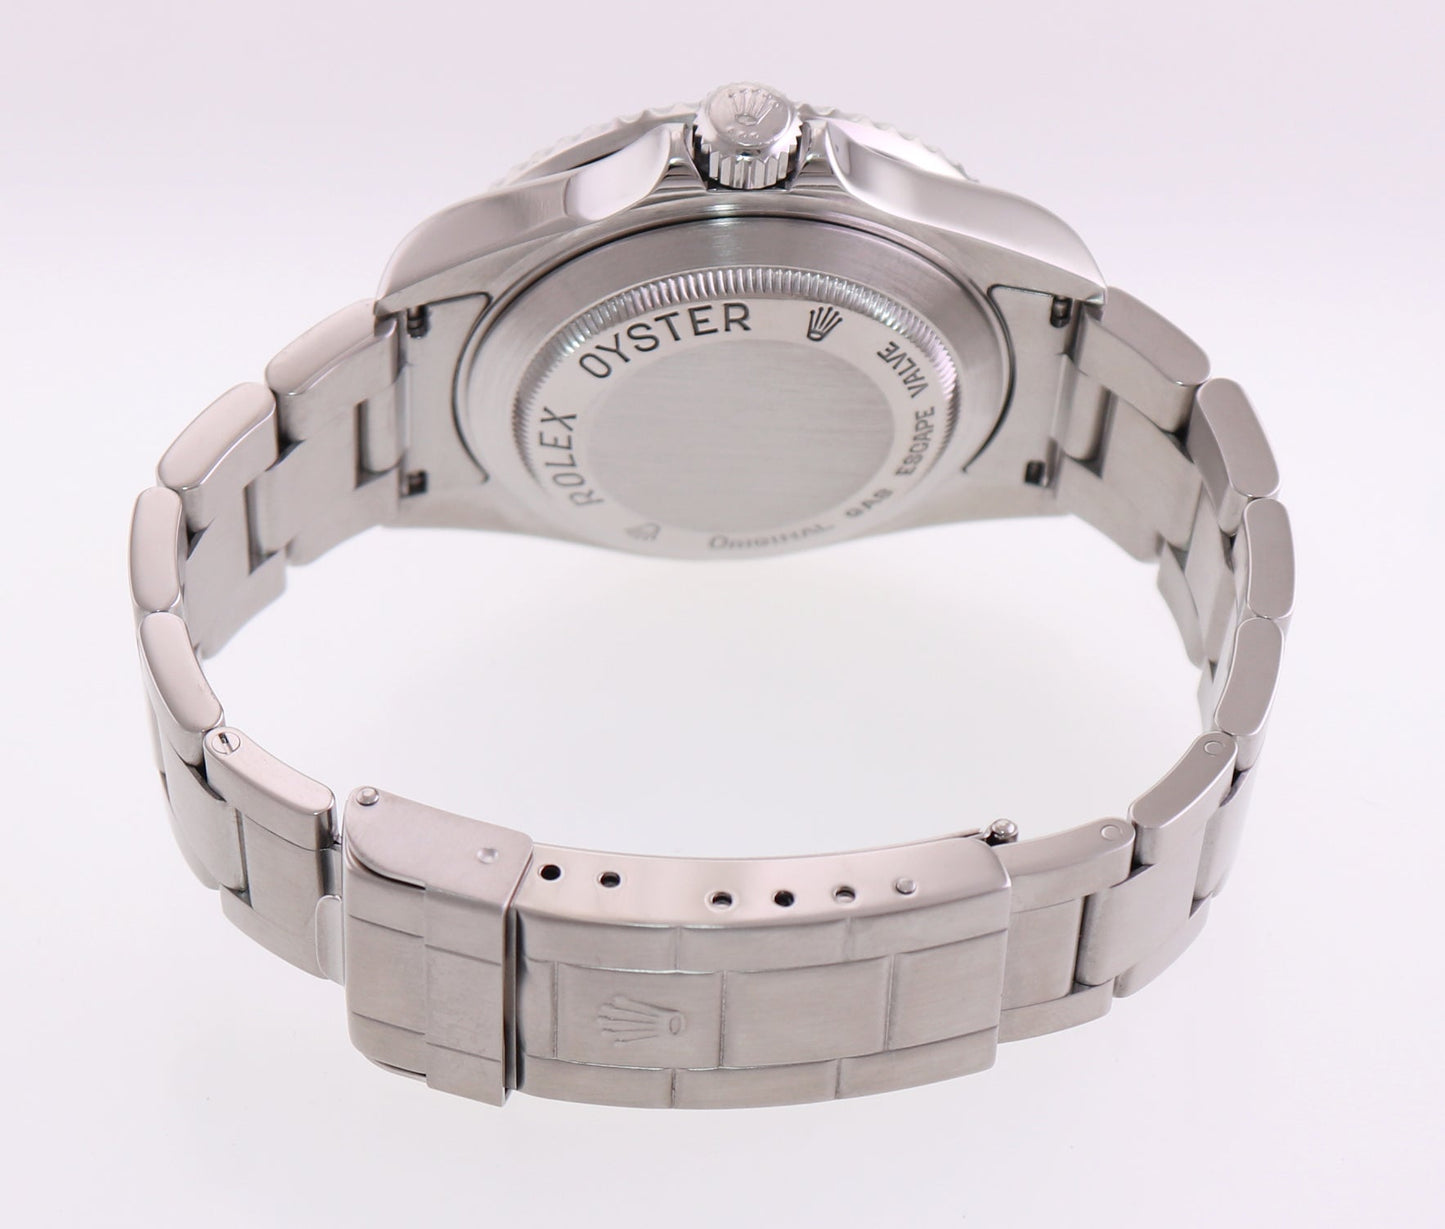 2006 Rolex Sea-Dweller Steel 16660 Black Dial Date 40mm Watch Box